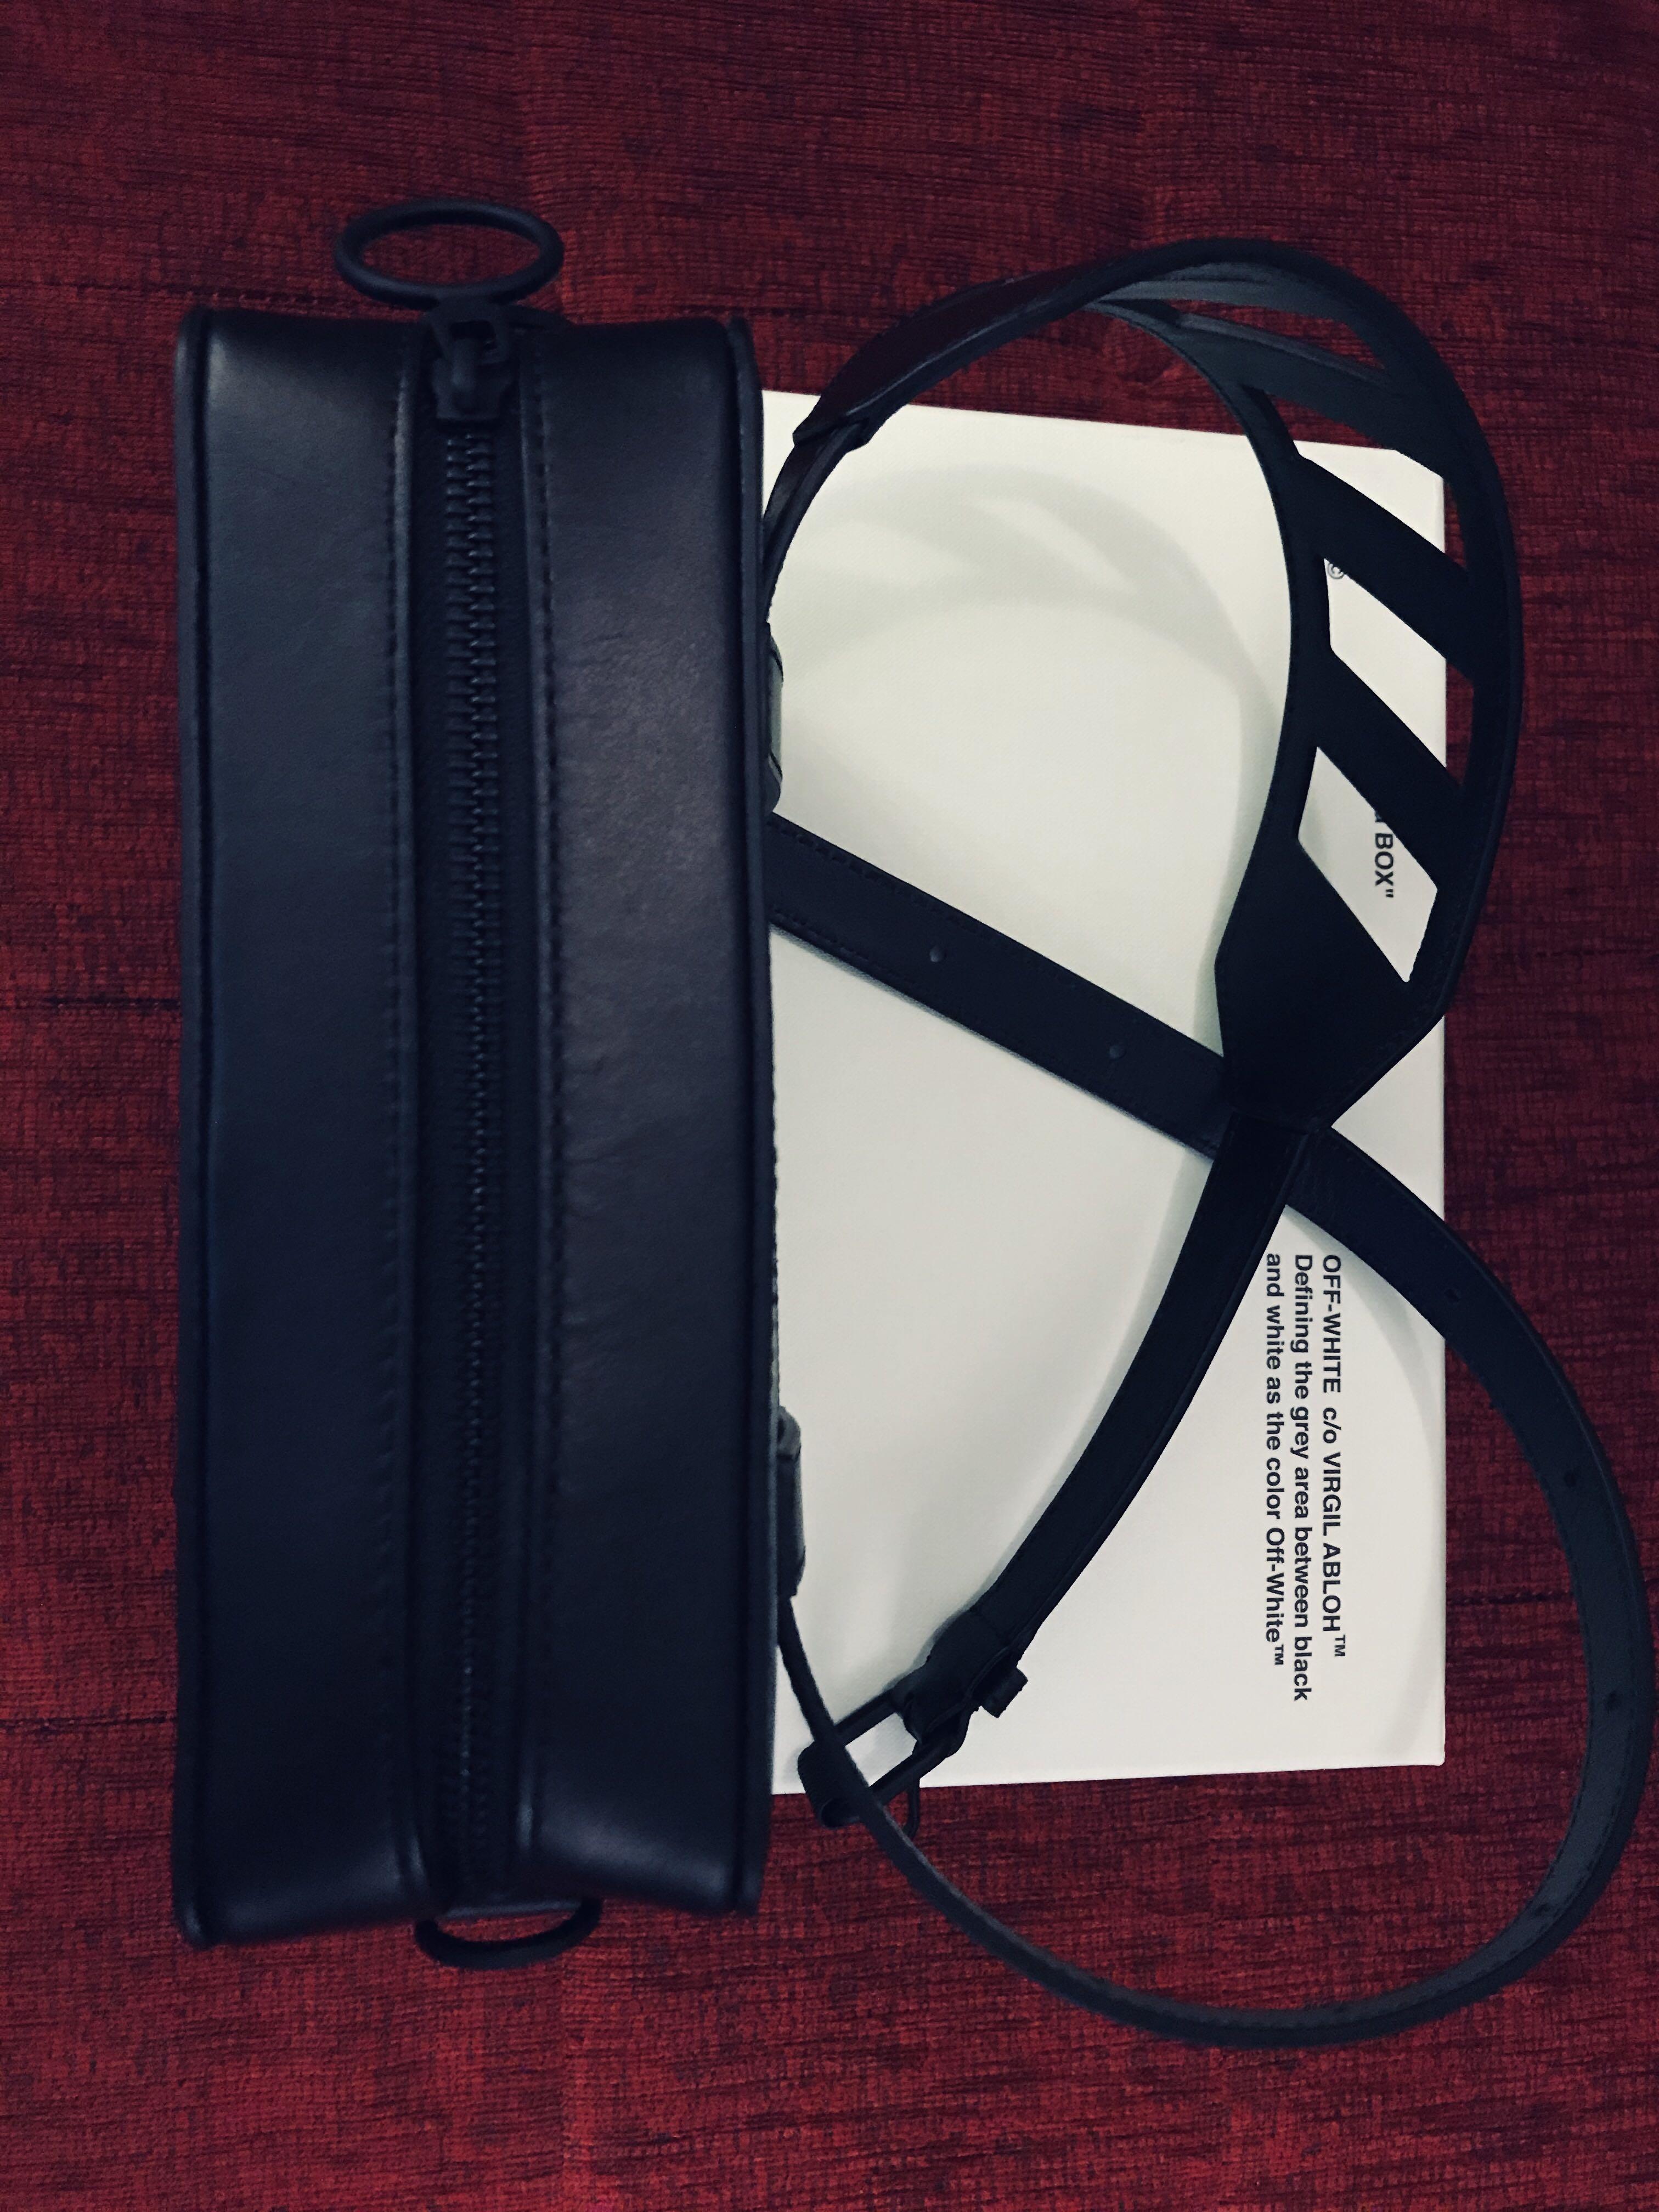 Off-White c/o Virgil Abloh Shoulder Bag With Lettering in Black